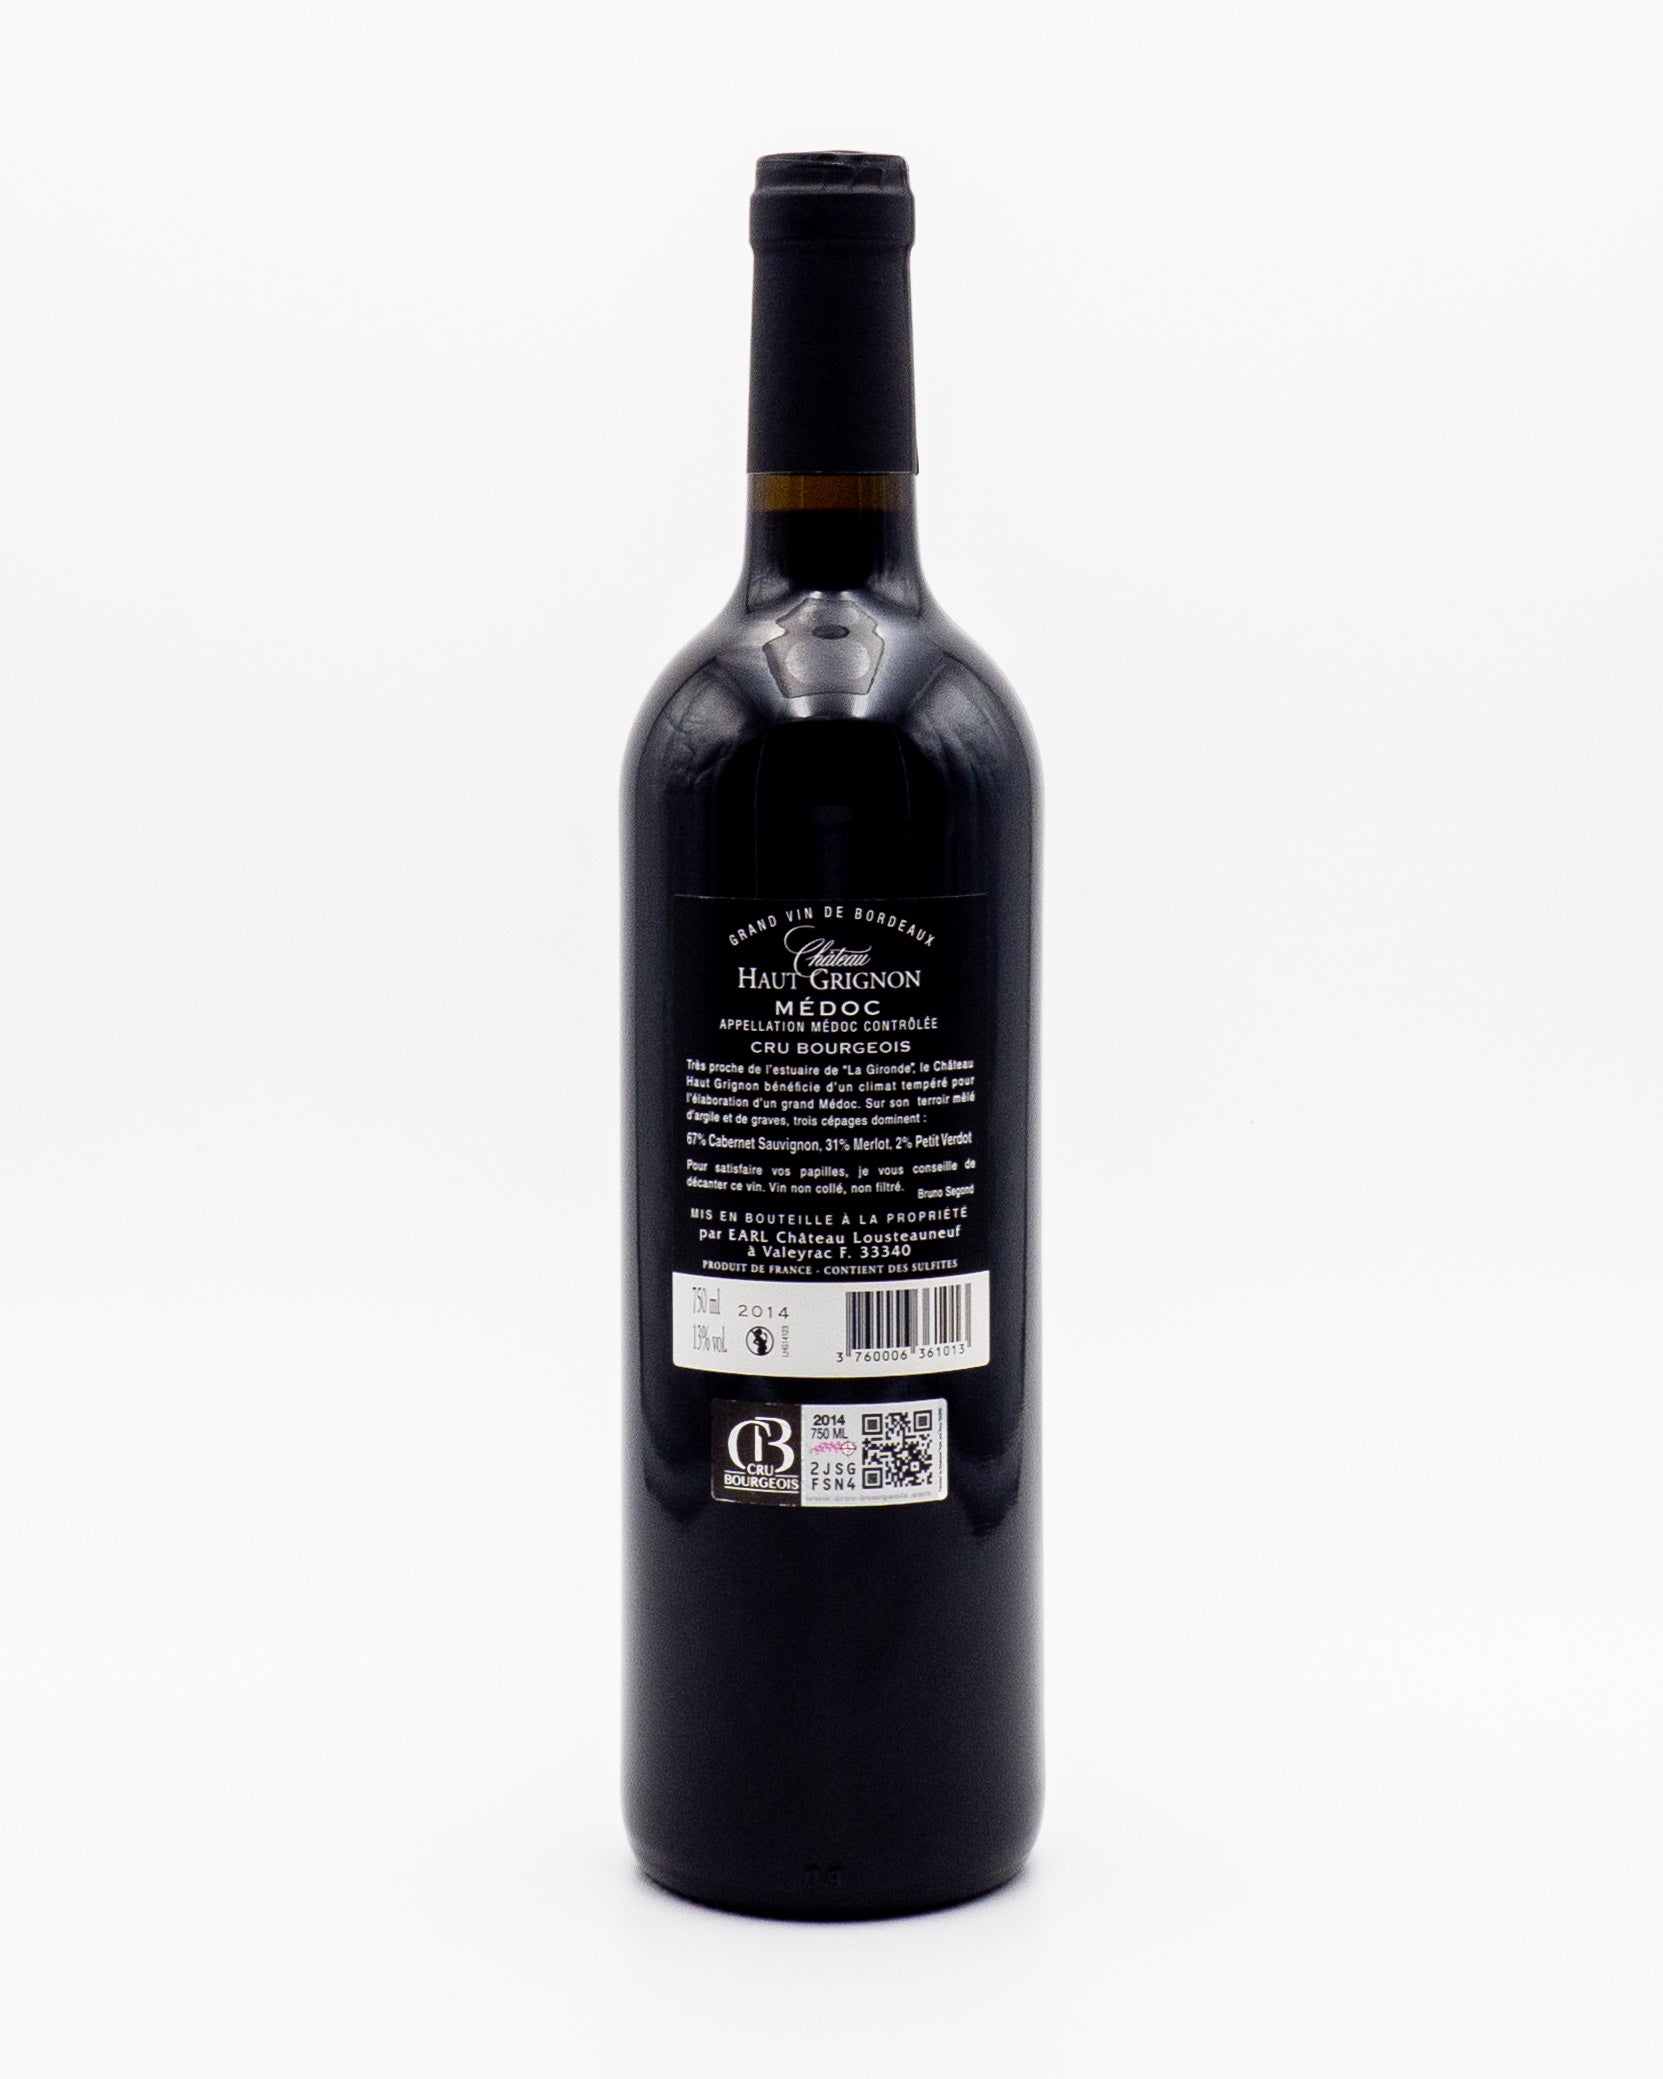 Grand Vin De Bordeaux Medoc Cru Bourgeois 2014 - Chateau Haut Grignon